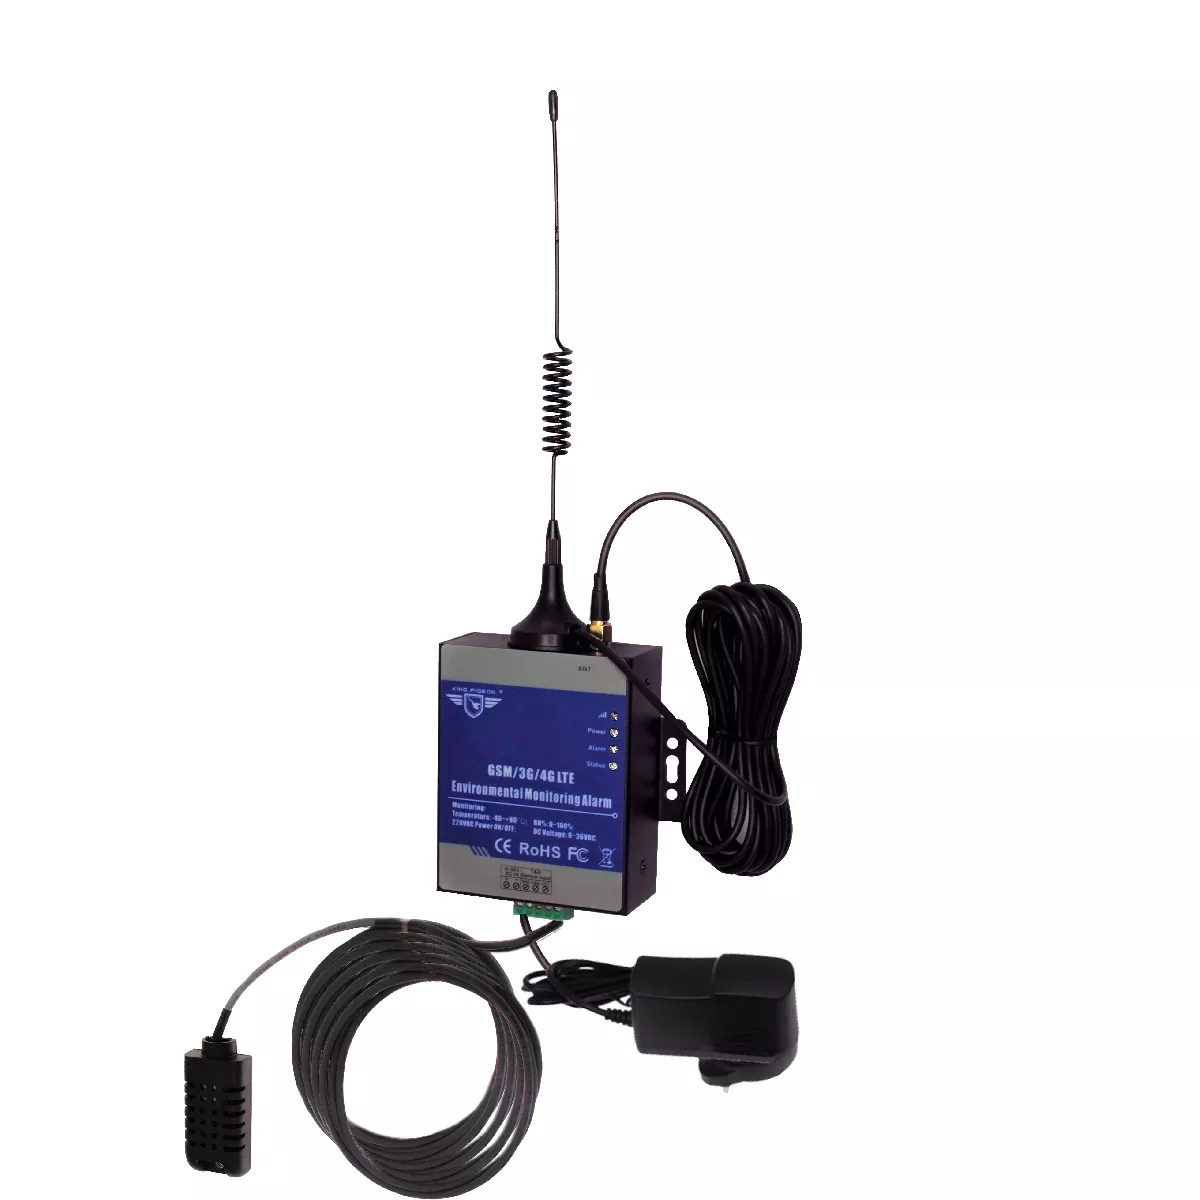 Moniteur GSM 2G+3G+4G appel et SMS - température humidité (hygrométrie)  panne de courant KP MON avec sonde 20 mètres